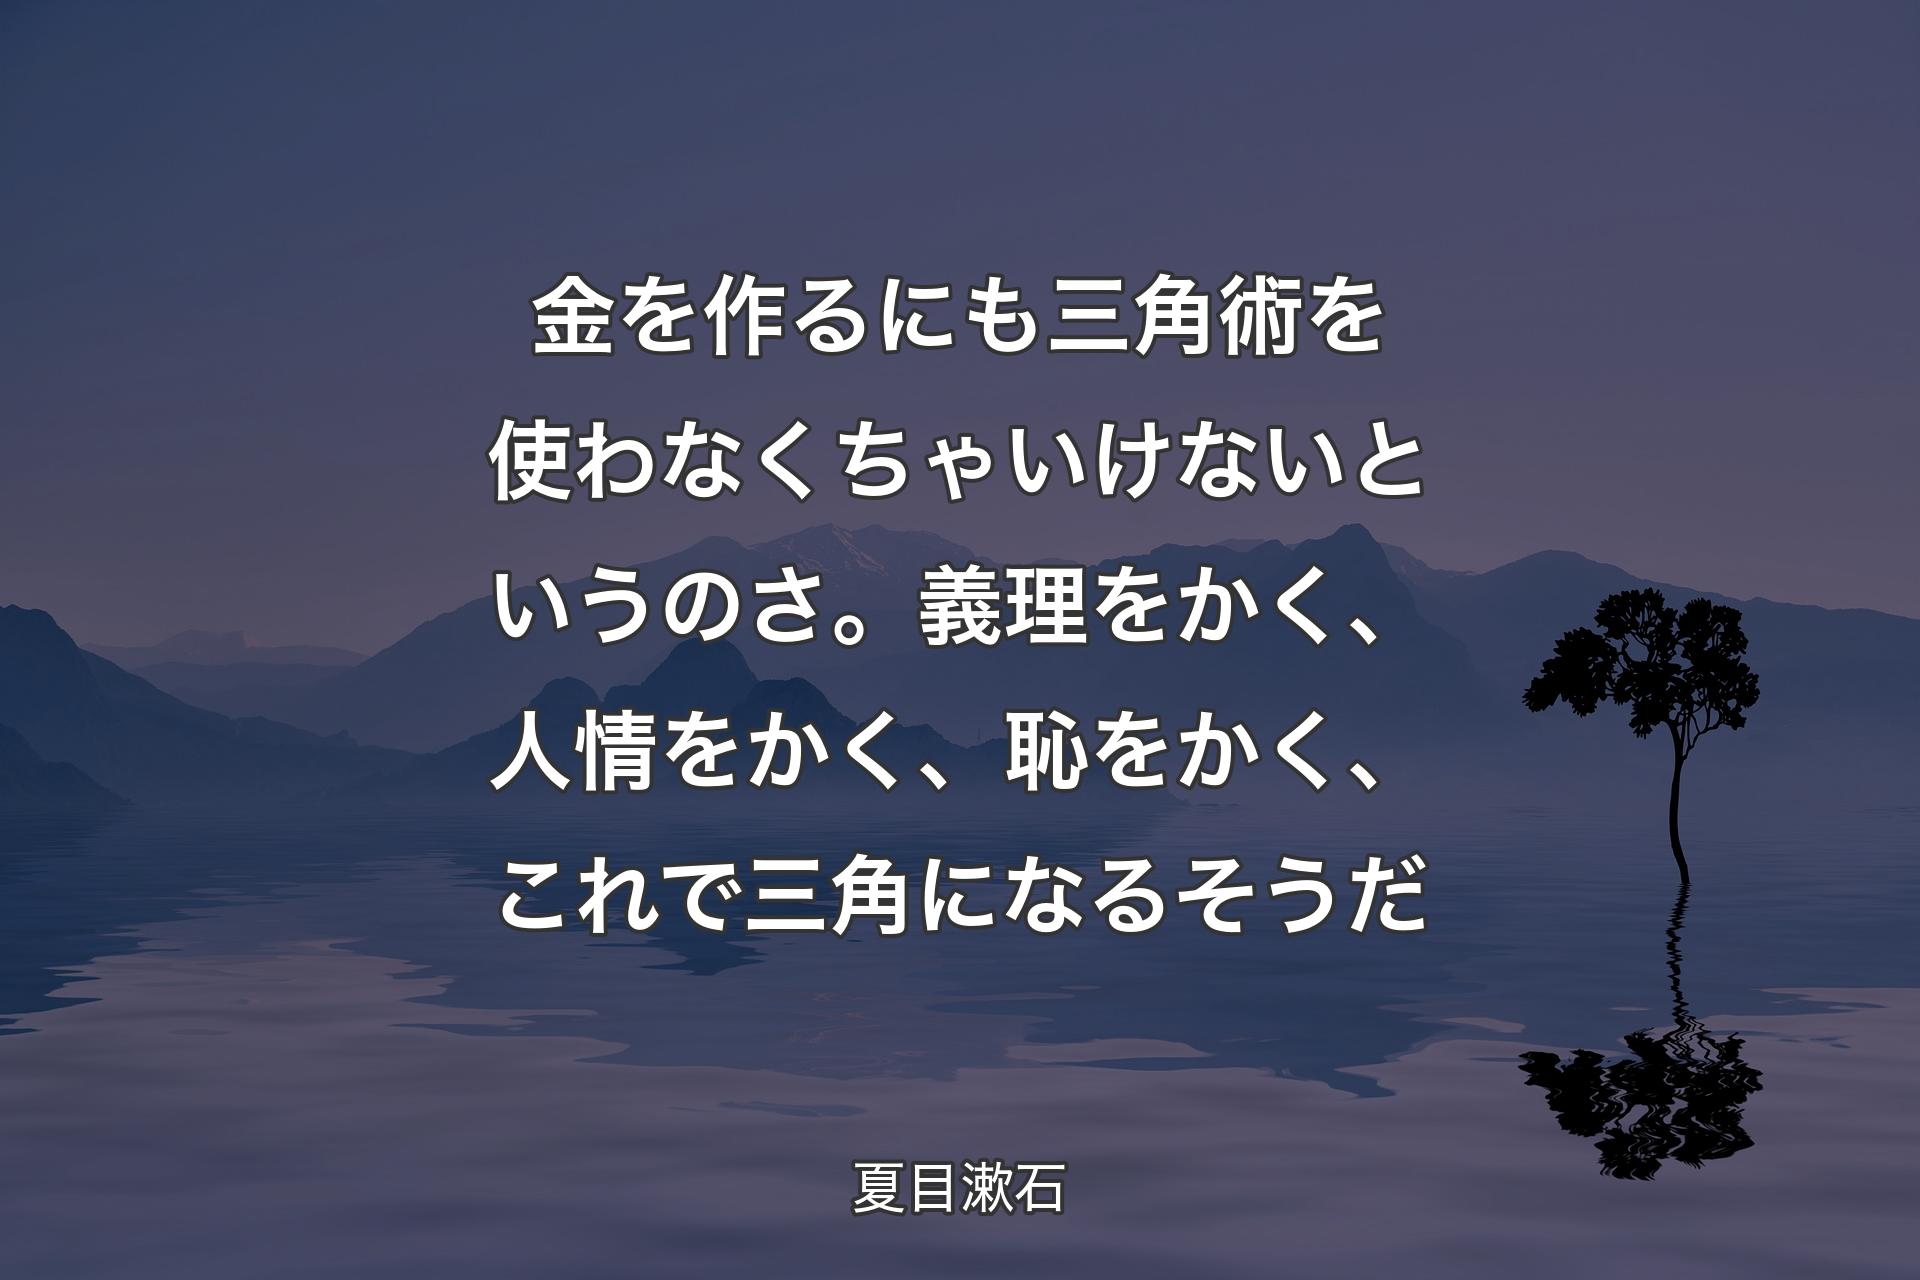 【背景4】金を作るにも三角術を使わなくちゃいけないというのさ。義理をかく、人情をかく、恥をかく、これで三角になるそうだ - 夏目漱石